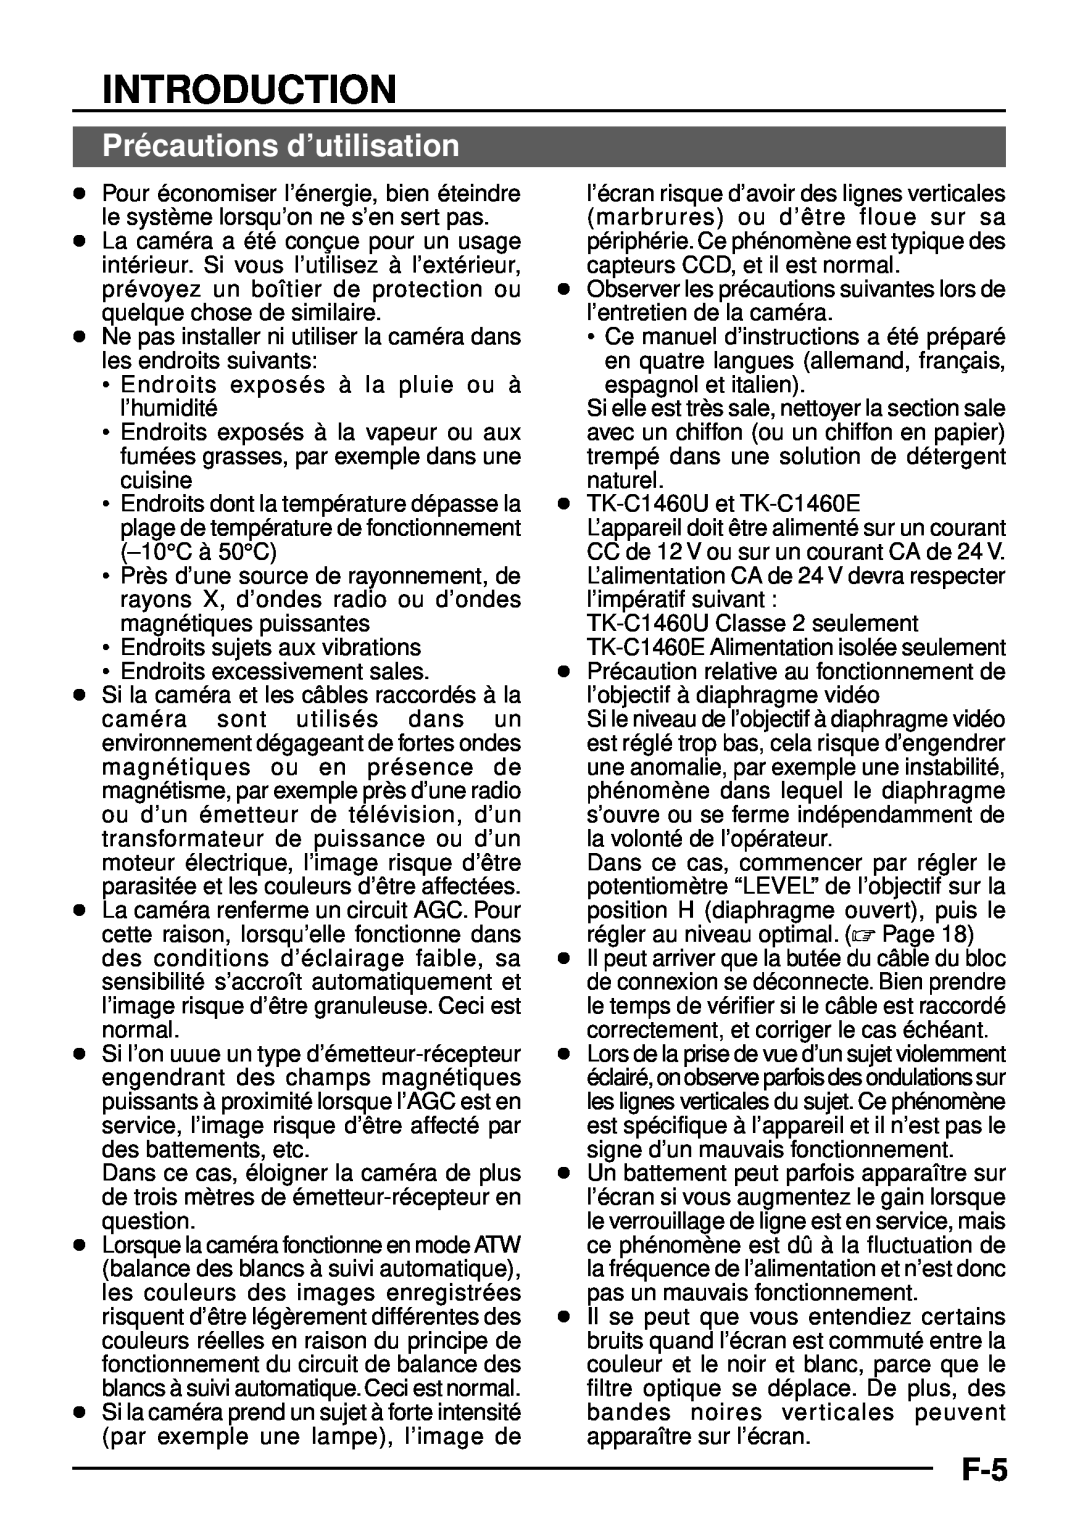 JVC TK-C1460 manual Pré cautions d’utilisation, Introduction 